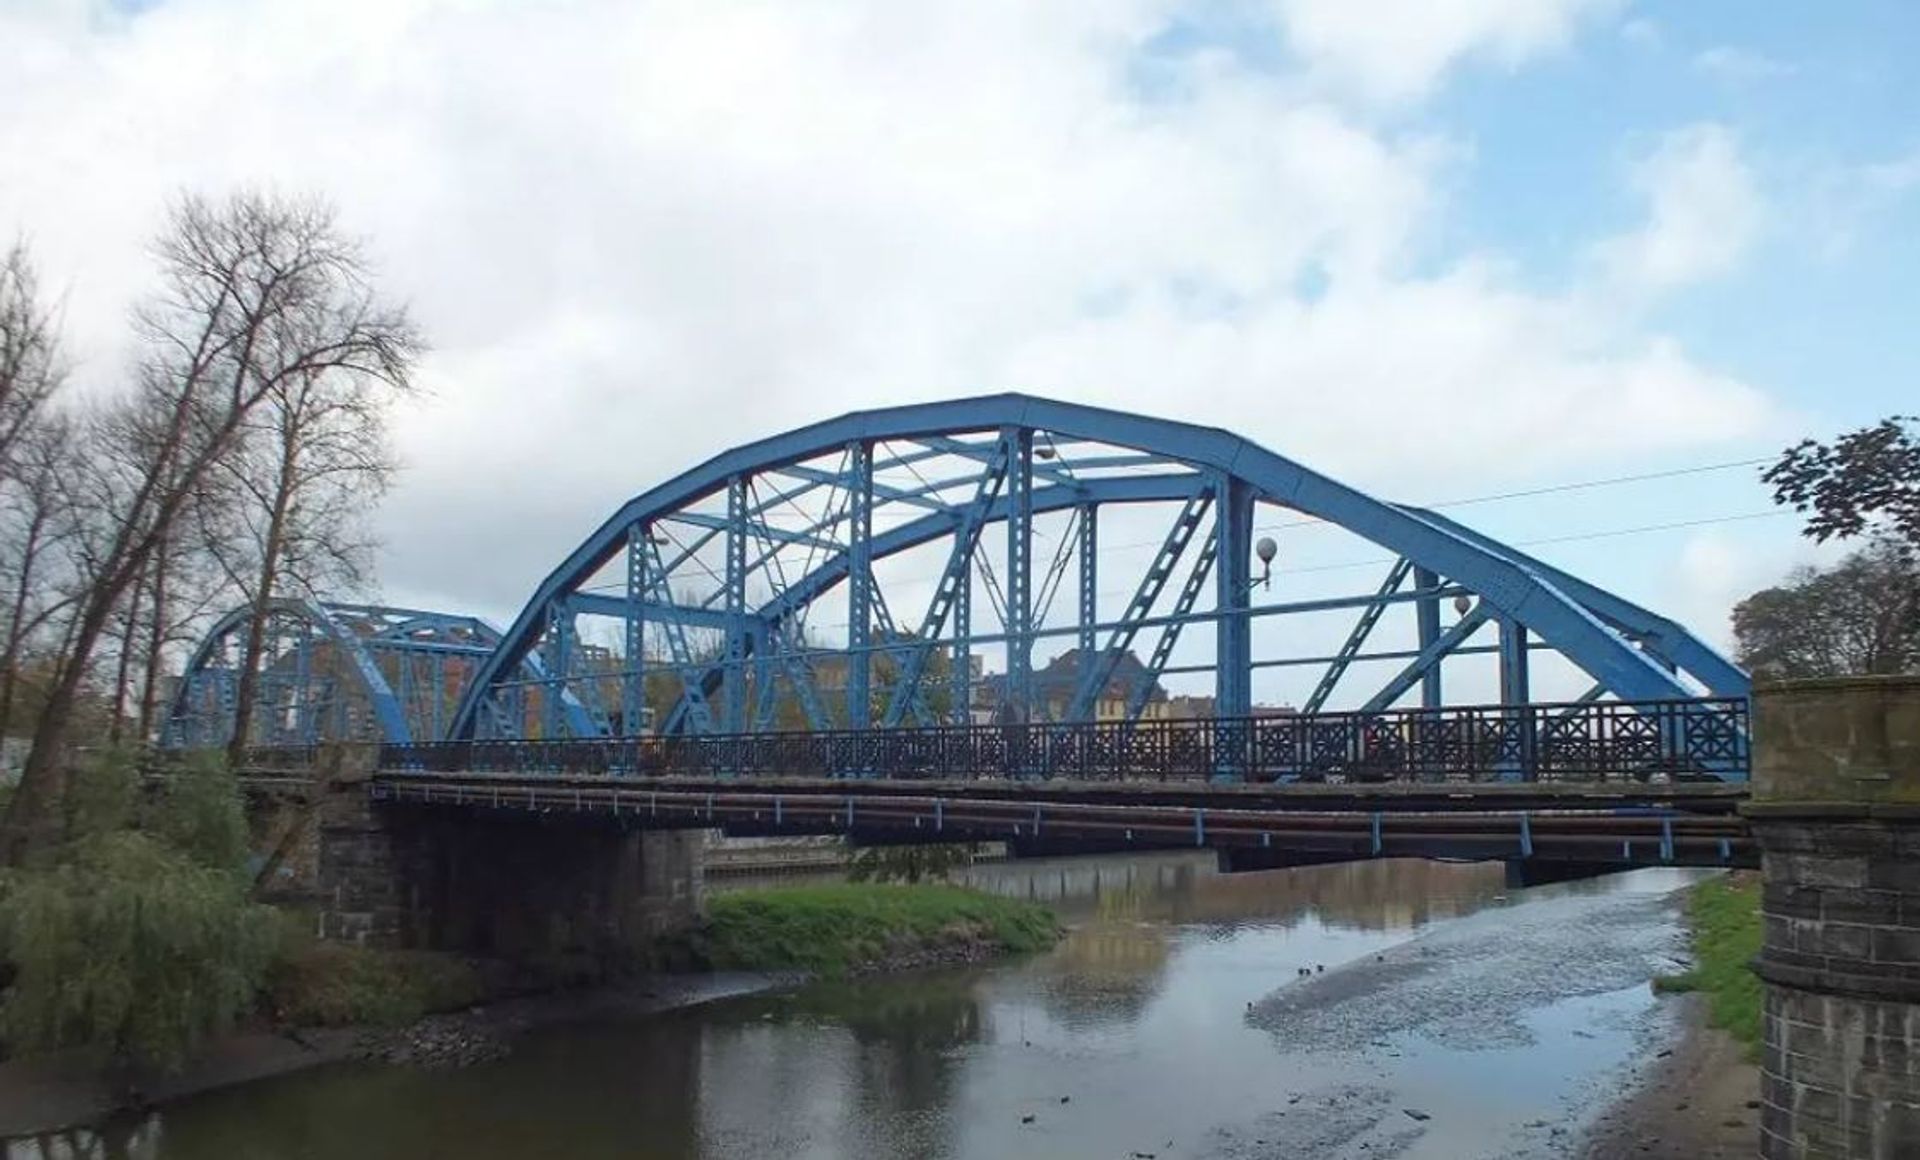 Zabytkowy most Sikorskiego we Wrocławiu przejdzie generalny remont. Ogłoszono przetarg na projekt